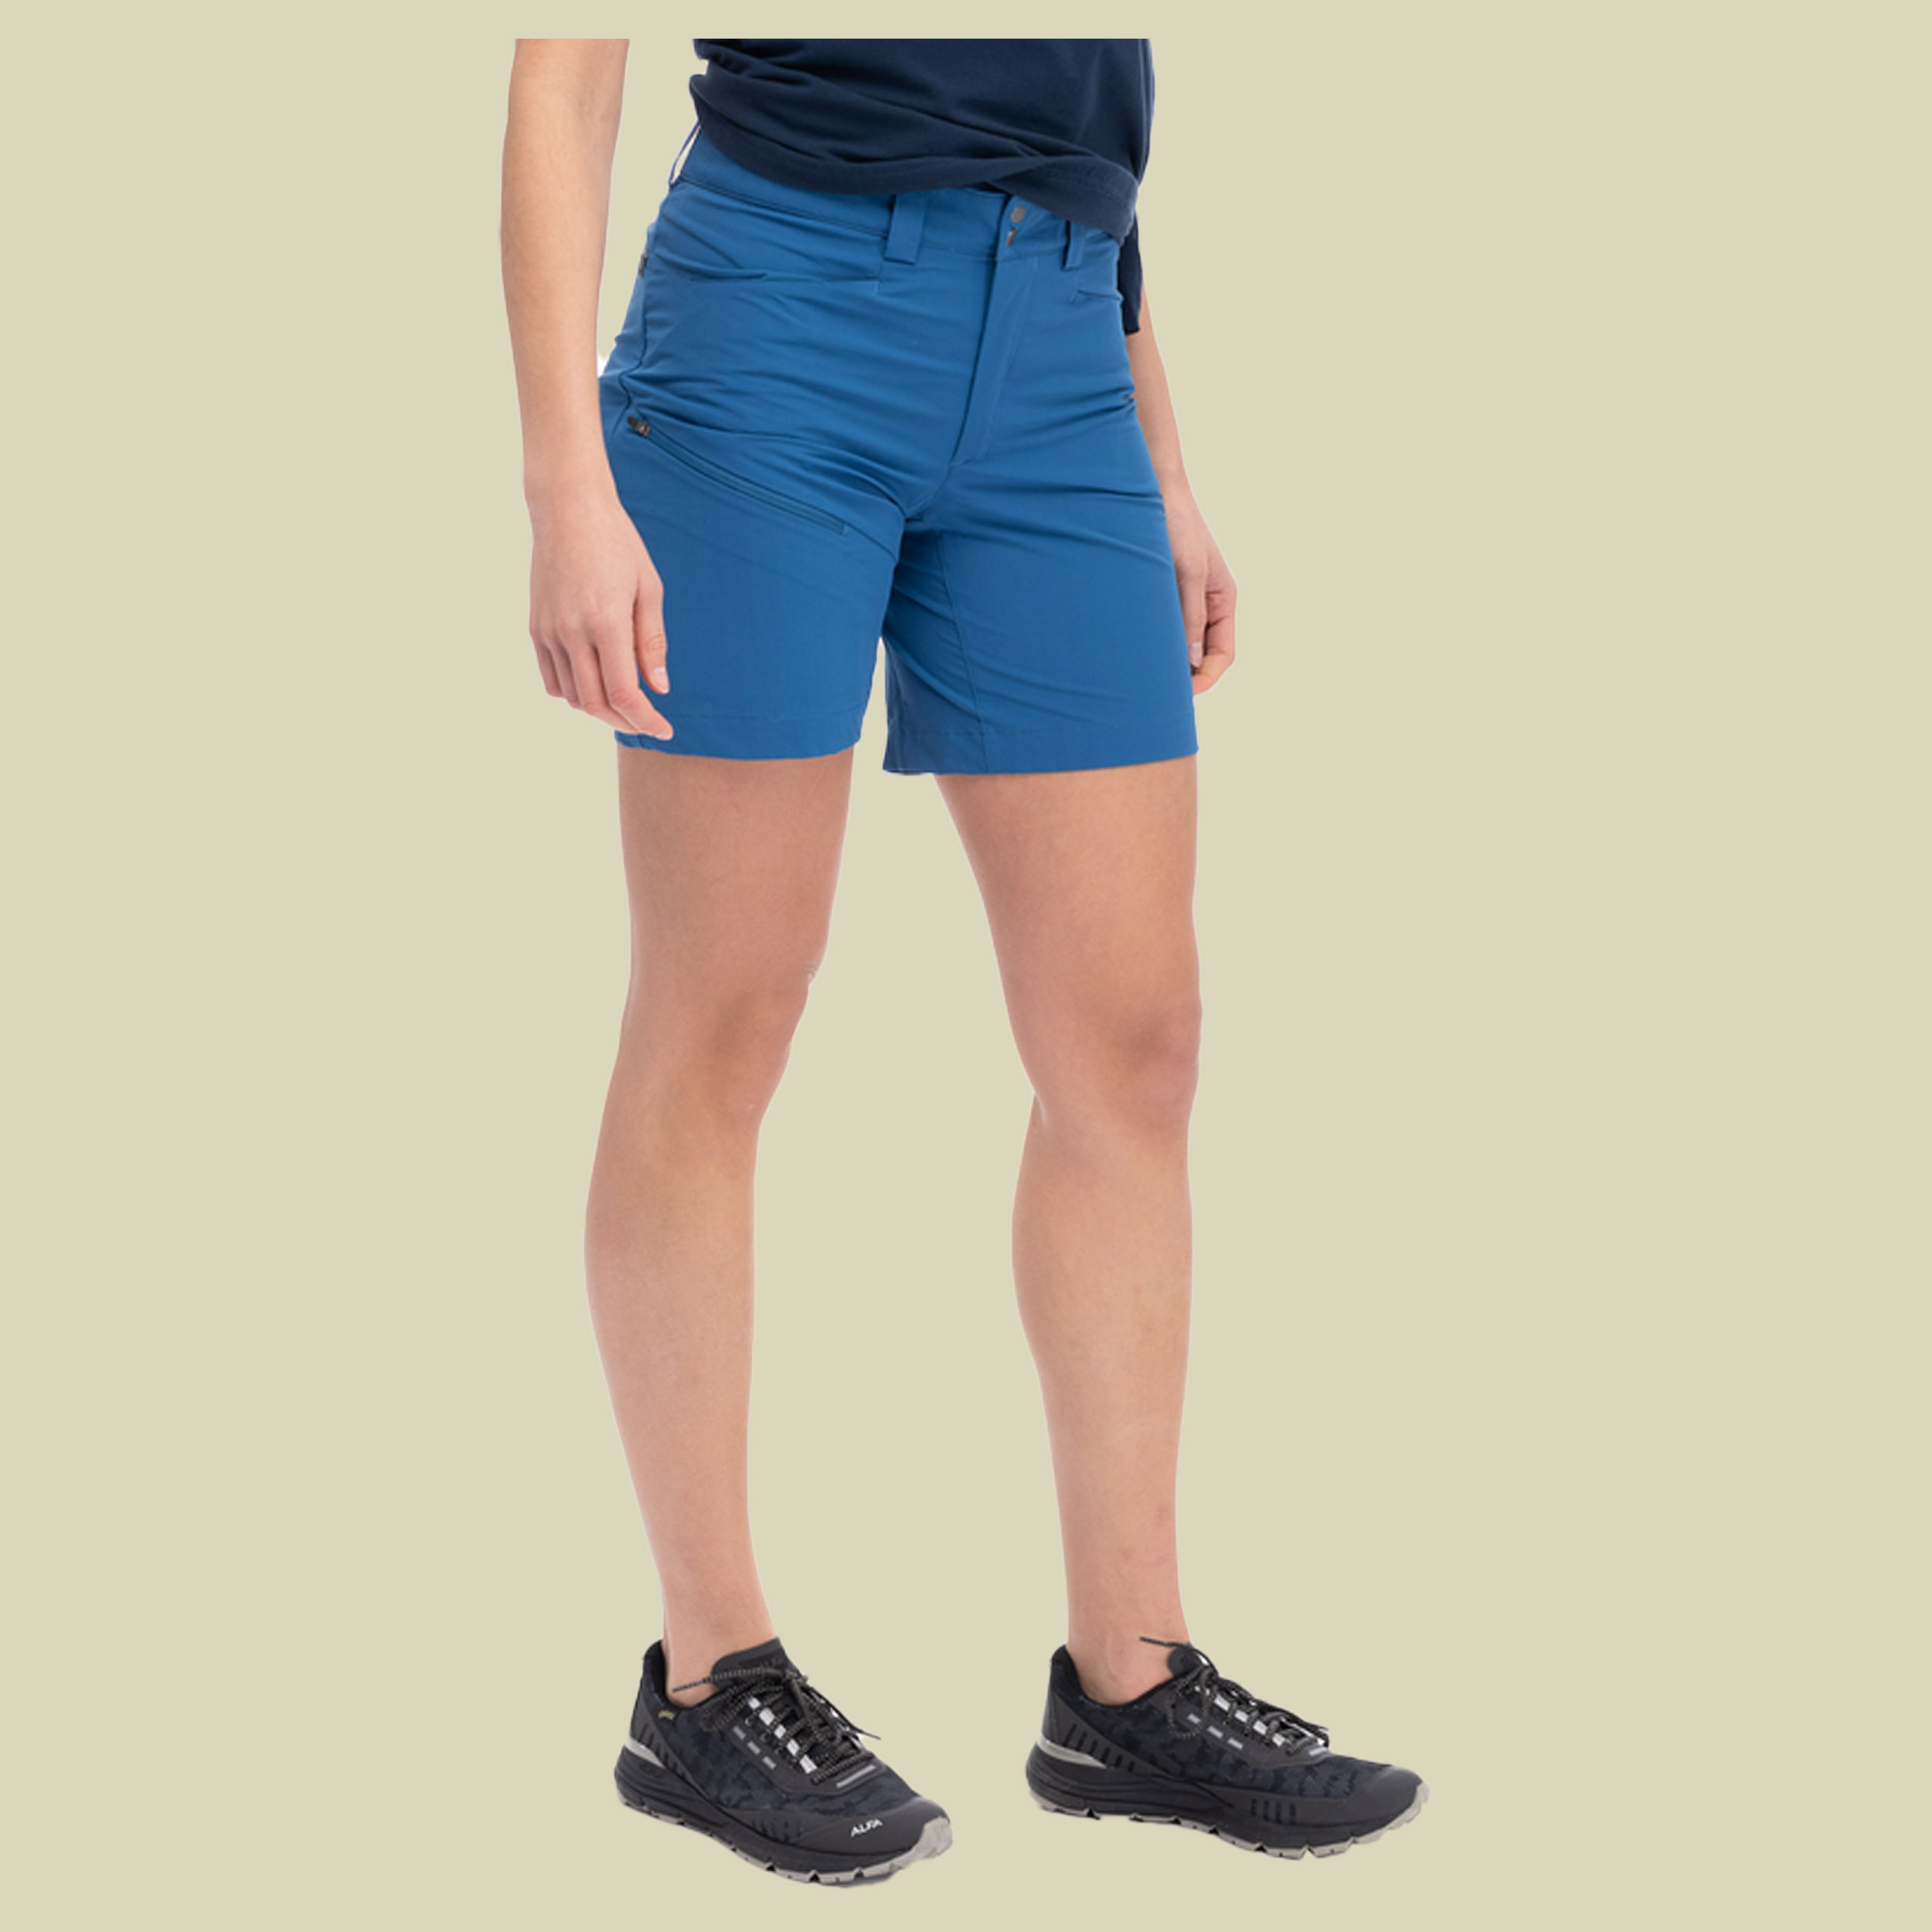 Vandre Light Softshell Shorts Women Größe 36 Farbe north sea blue